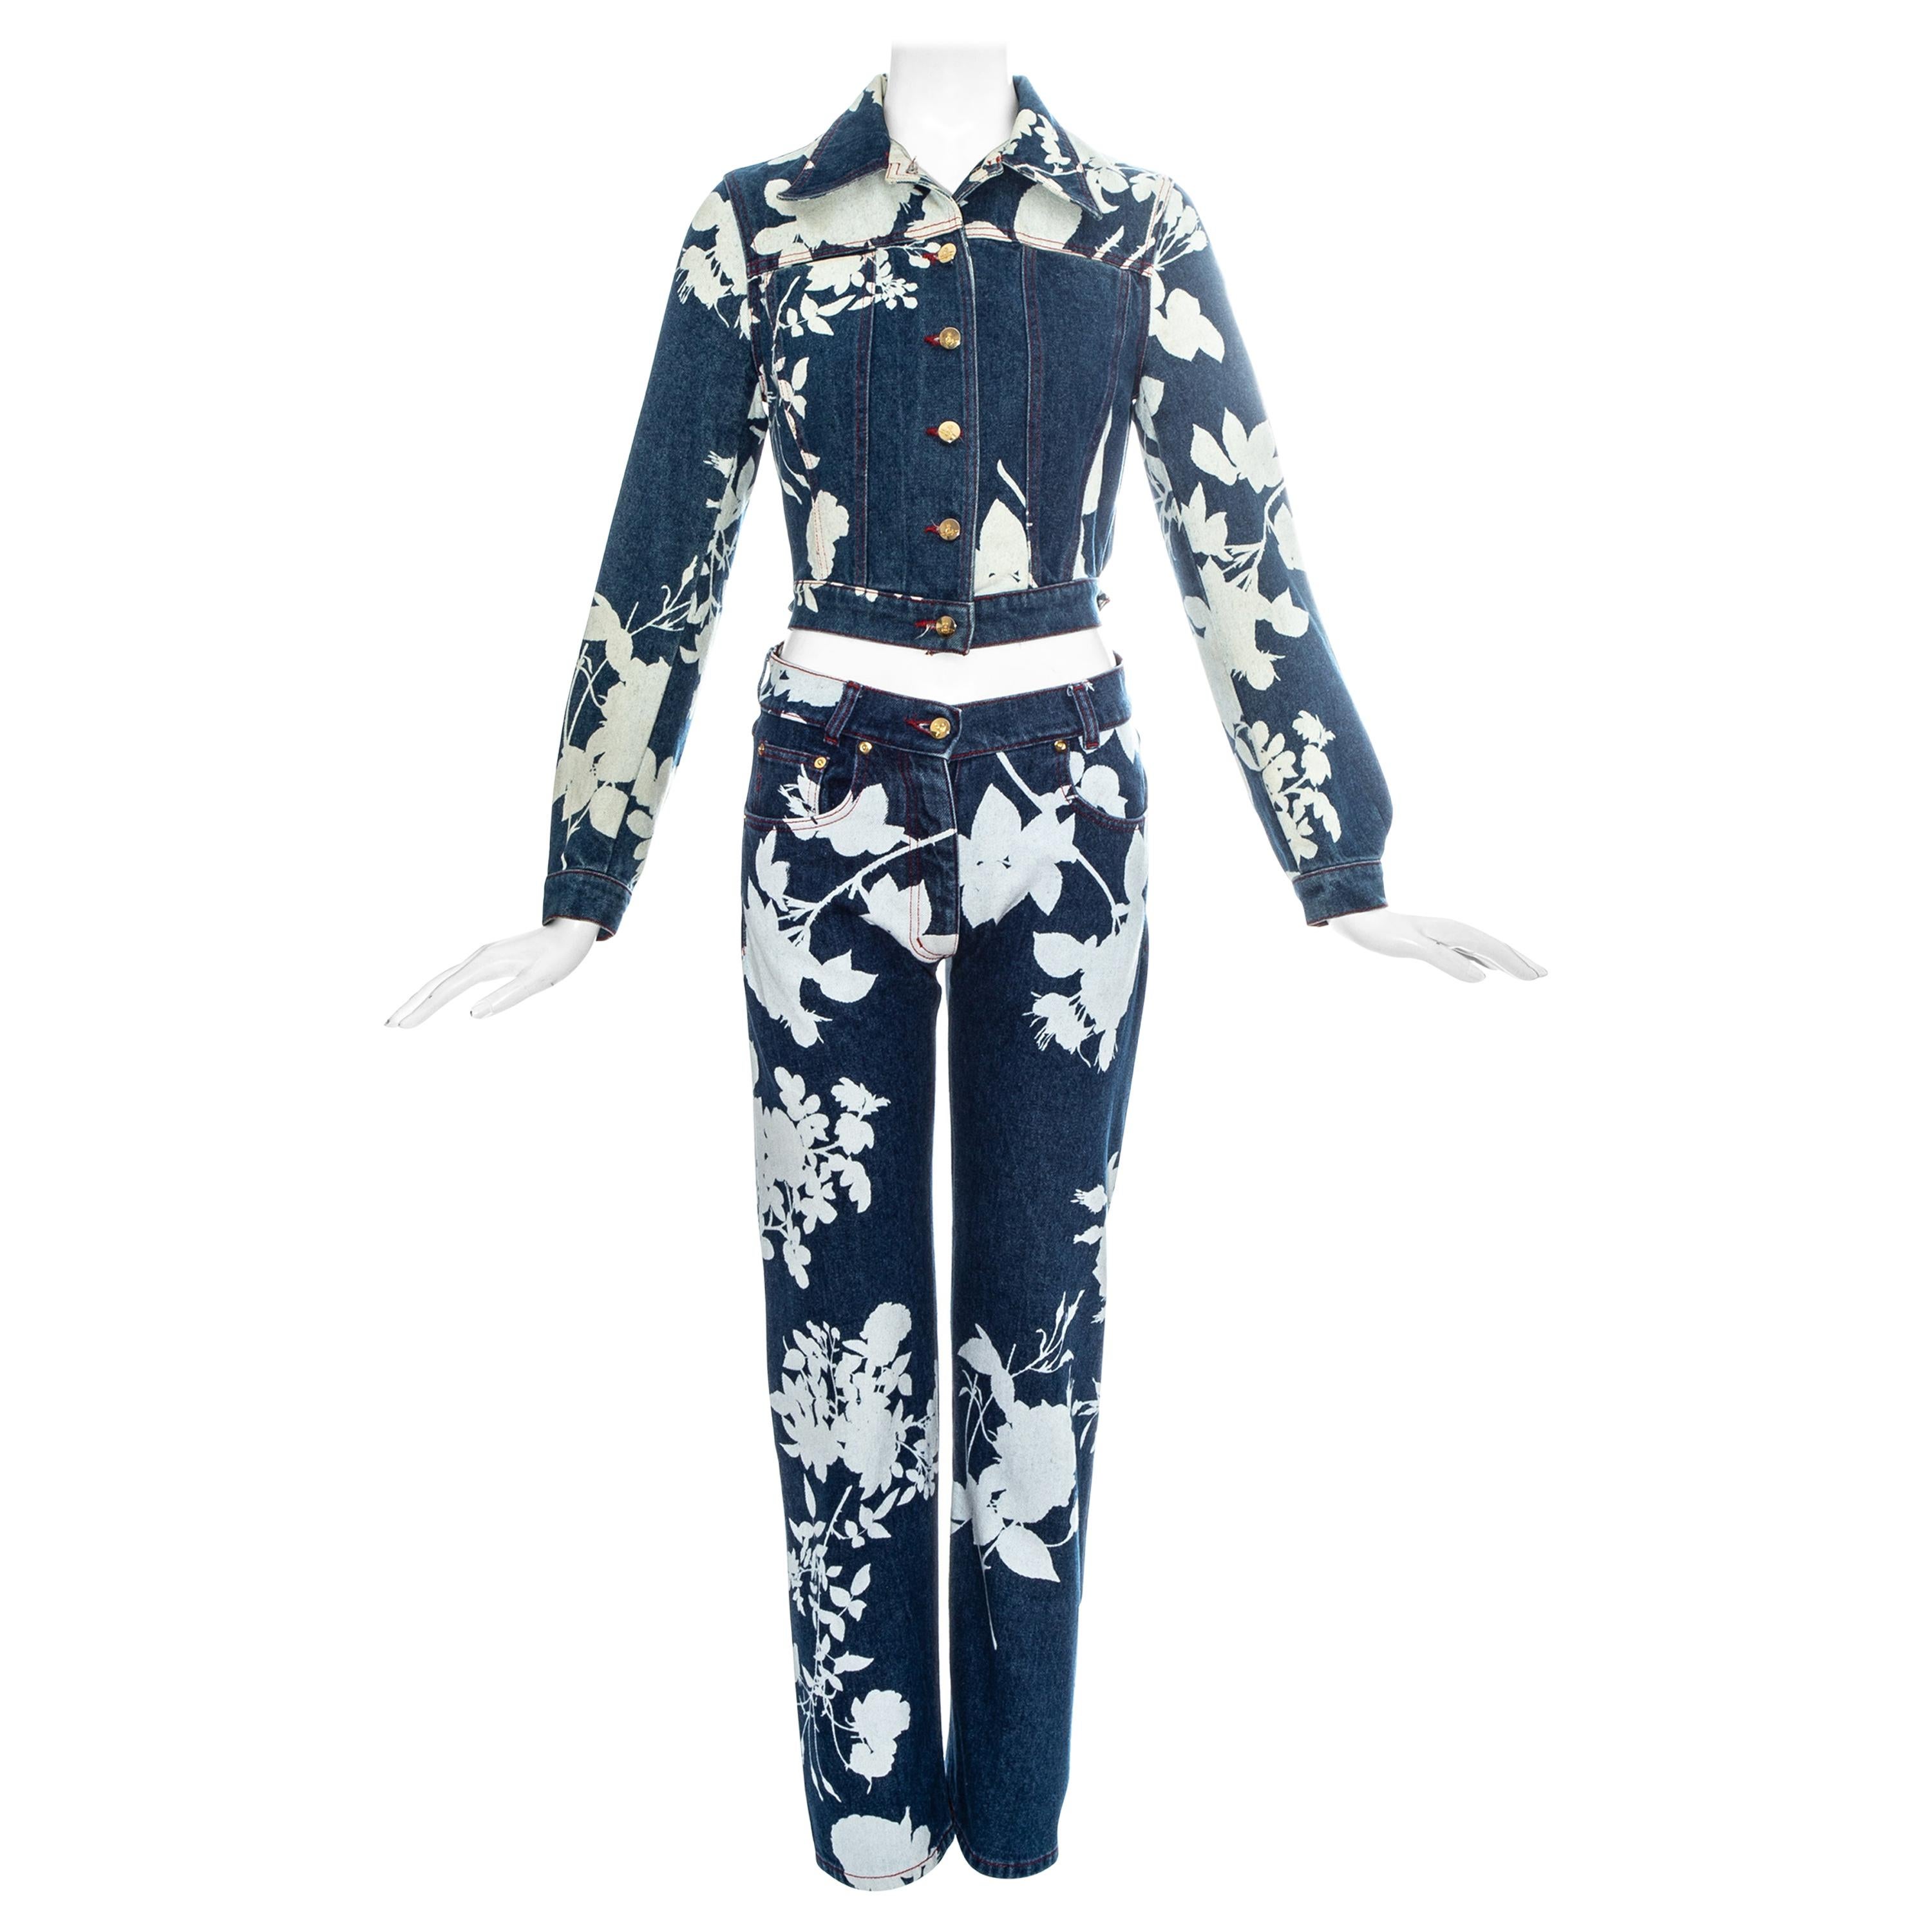 Vivienne Westwood blue denim pant suit with bleached floral print, ss 1994